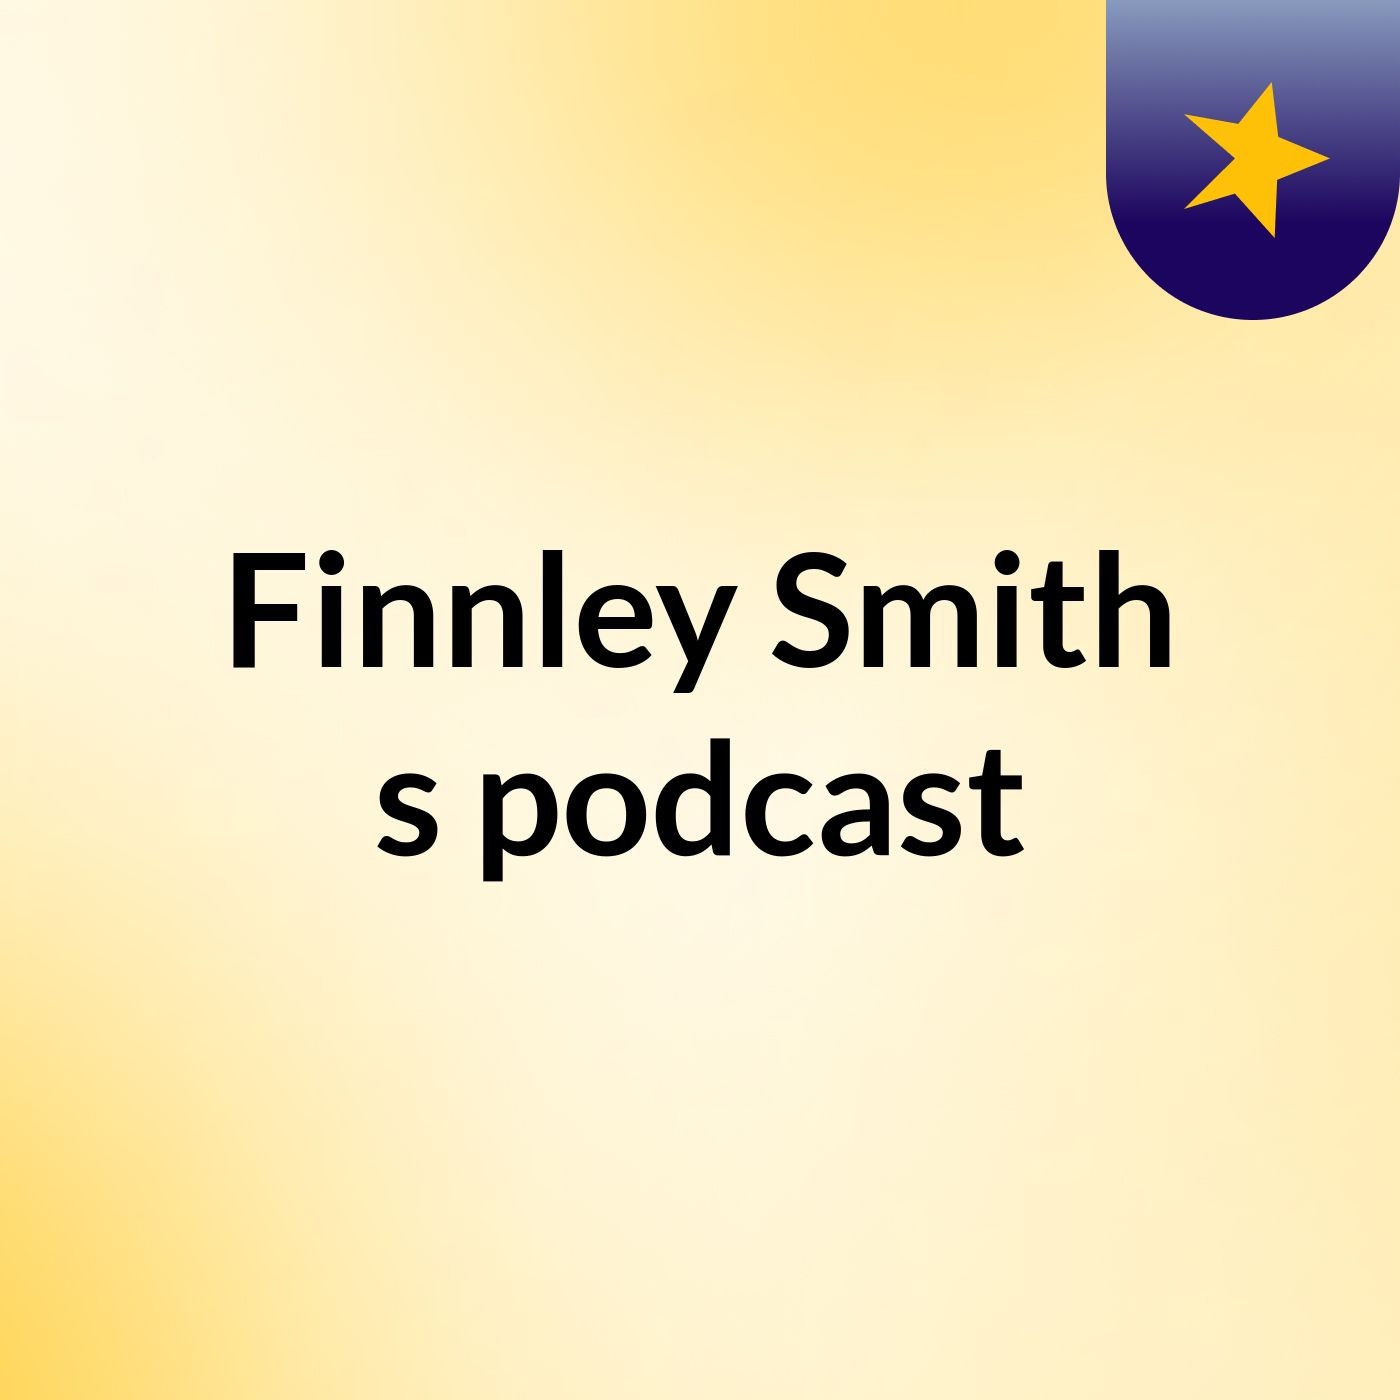 Finnley Smith's podcast